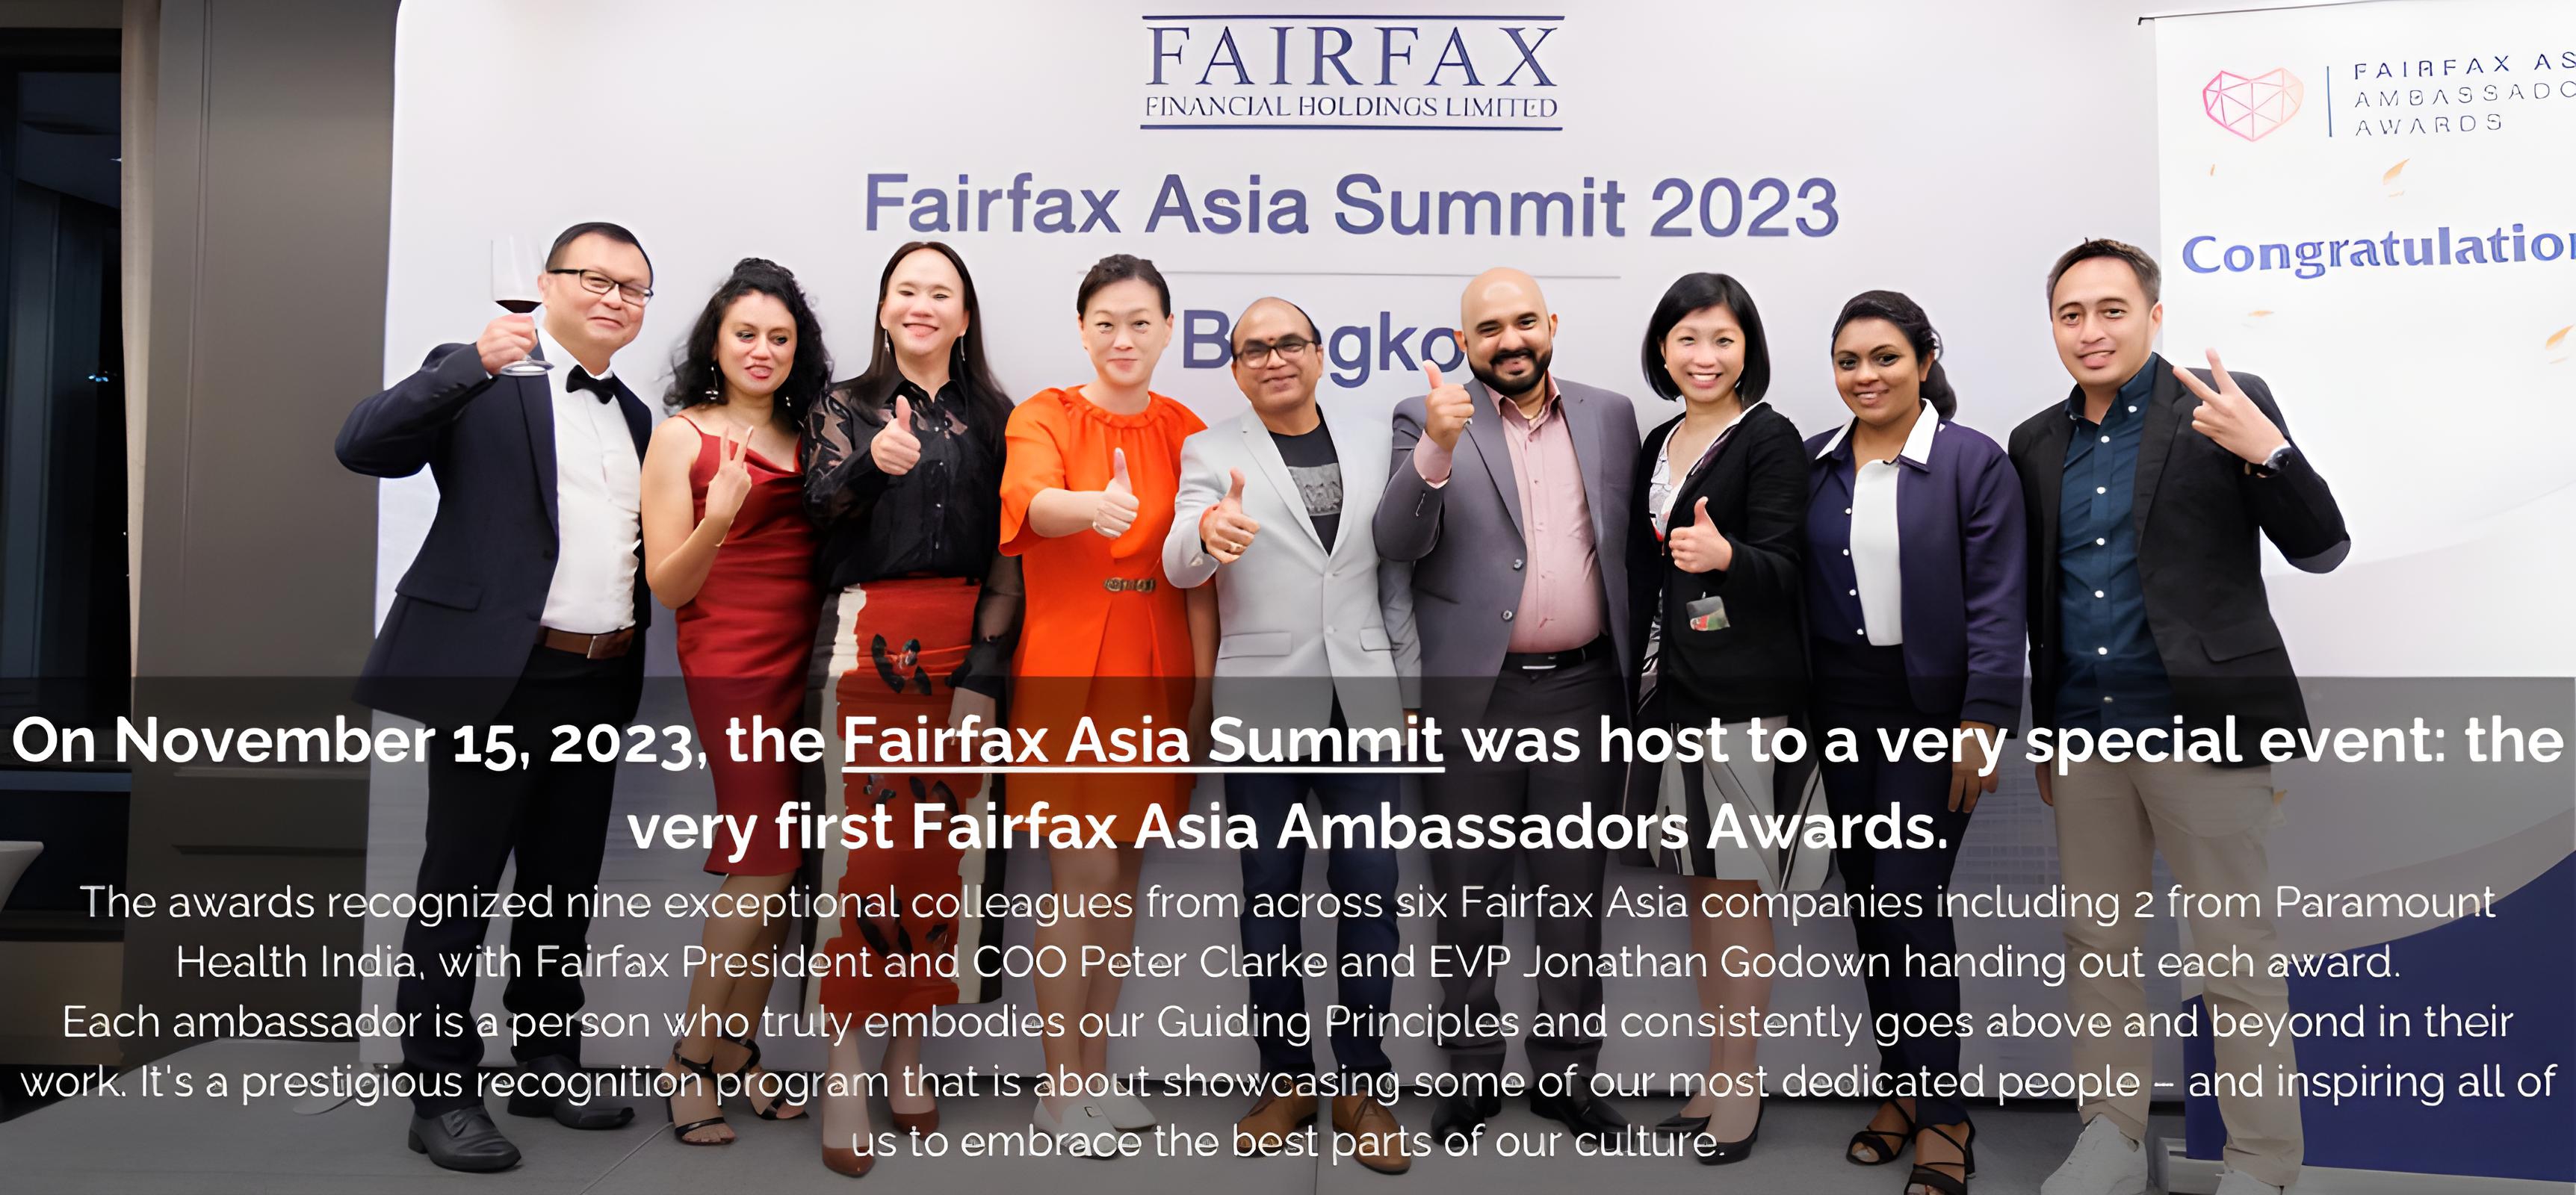 Fairfax Asia Summit 2023